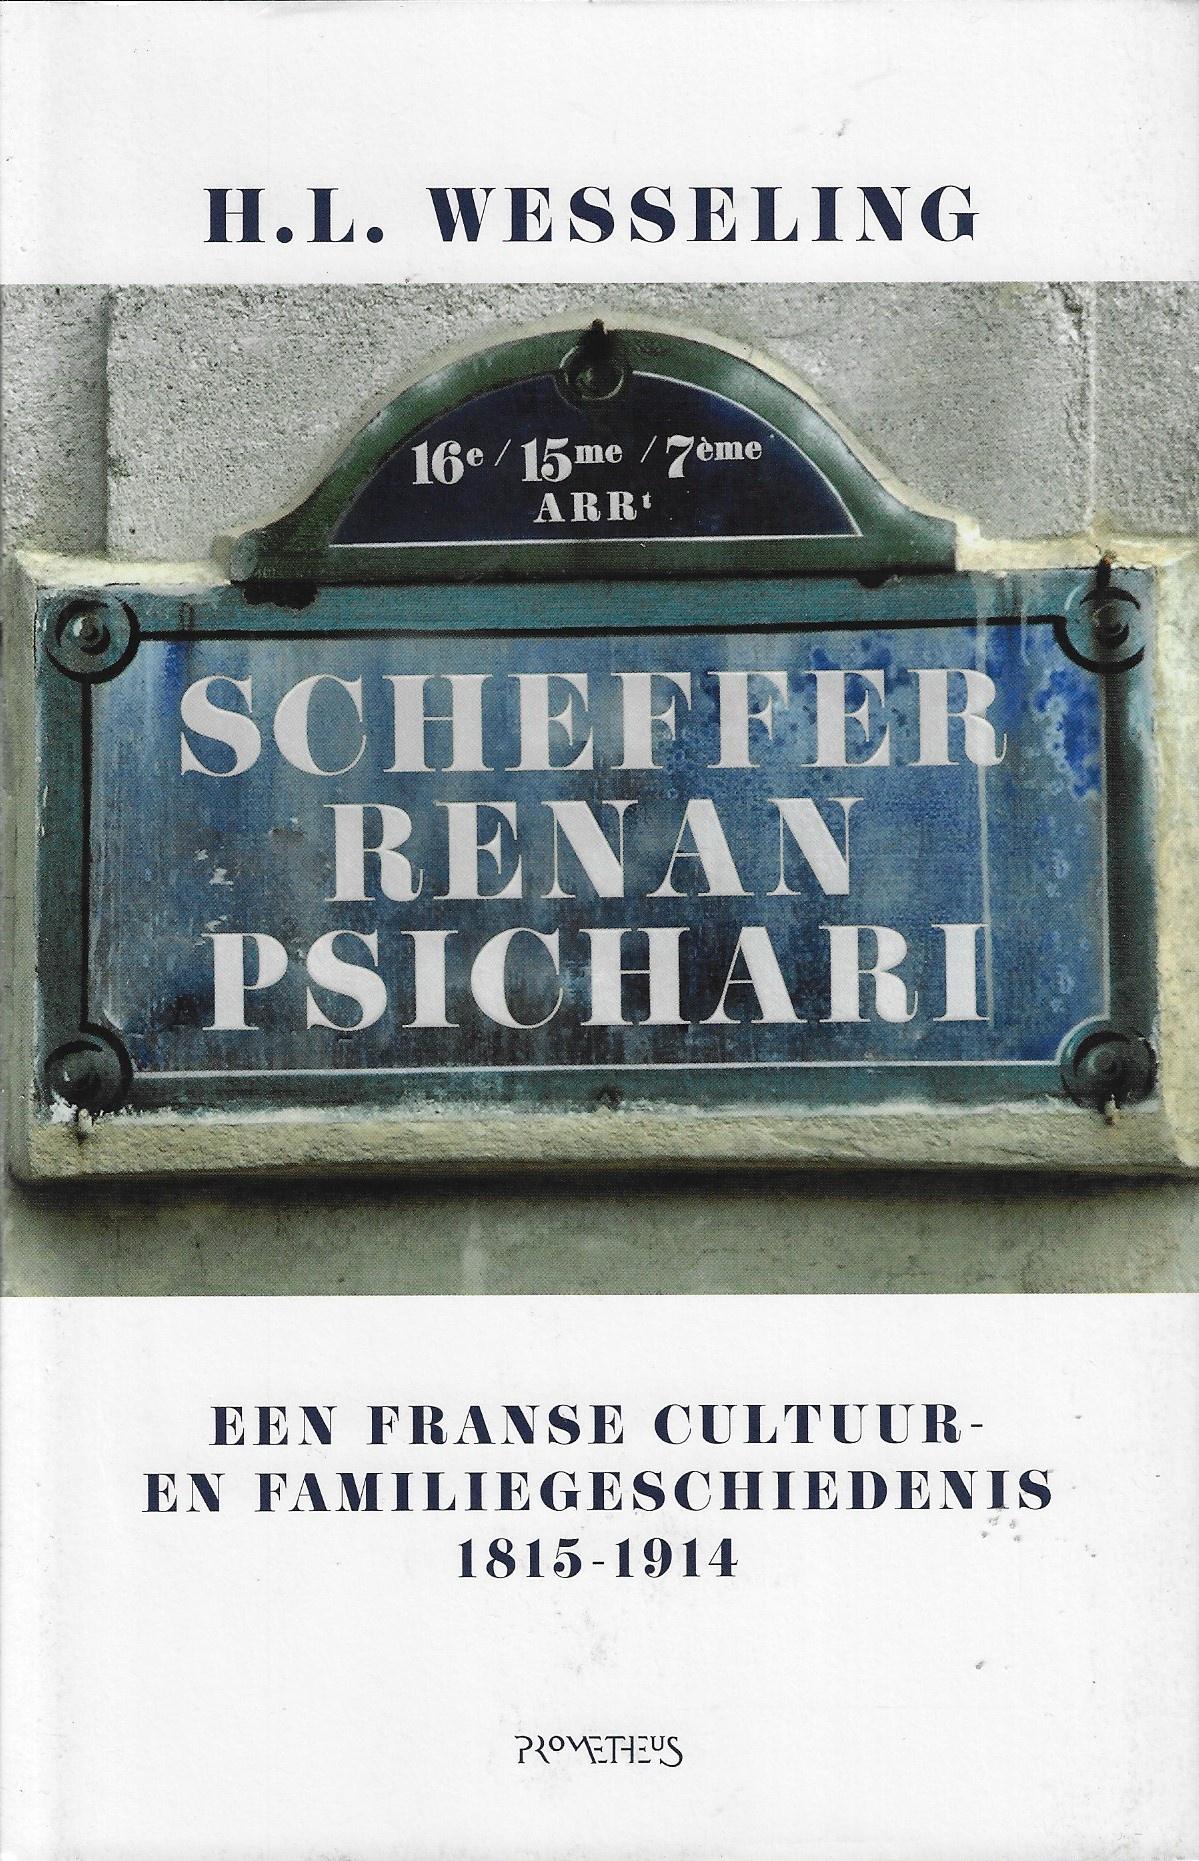 Scheffer - Renan - Psichari / een Franse cultuur- en familiegeschiedenis, 1815-1914